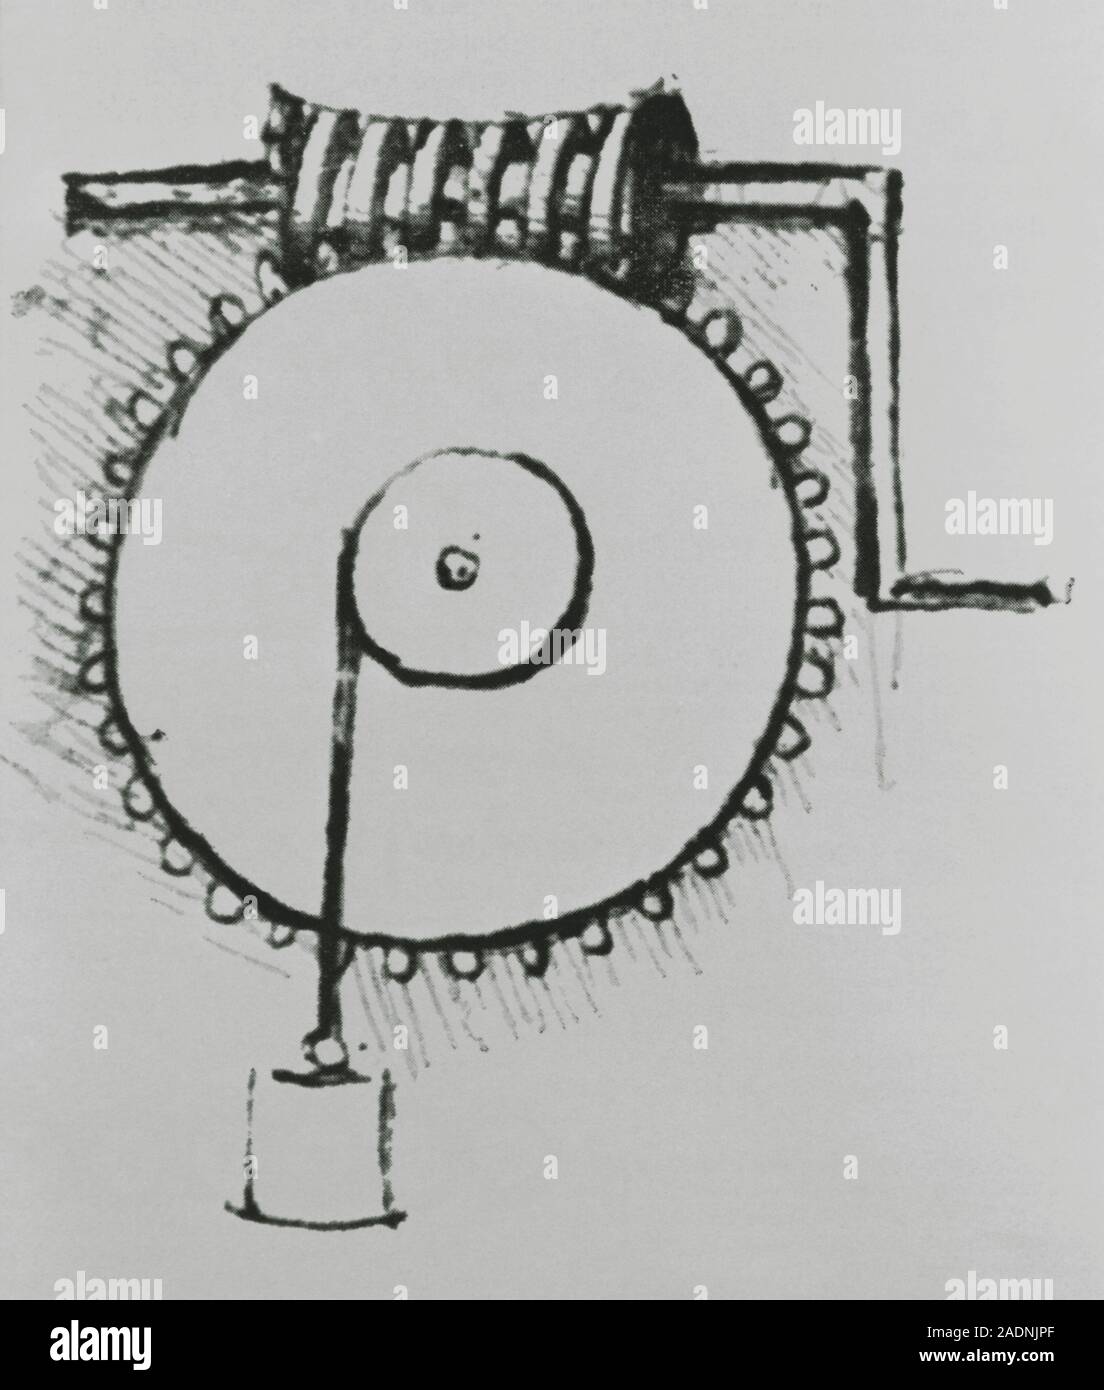 Engranaje helicoidal. Ilustración histórica de un engranaje helicoidal o  tornillo sinfín ideado por Leonardo da Vinci (1452- 1519) alrededor de  1490. El engranaje helicoidal consta de un toothe Fotografía de stock -  Alamy